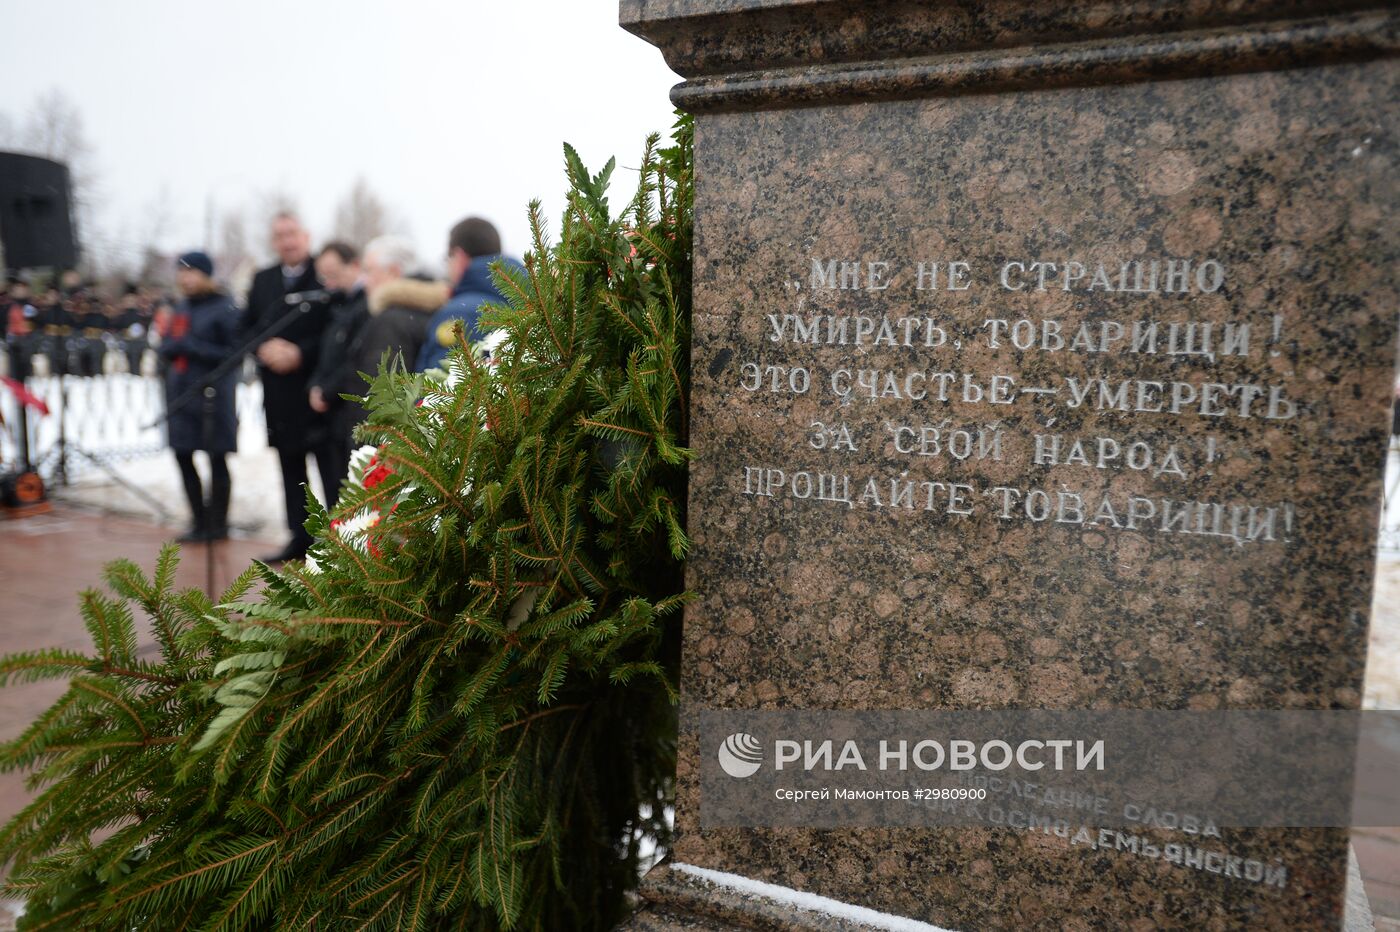 Памятные мероприятия, приуроченные к 75-летию со дня казни Зои Космодемьянской